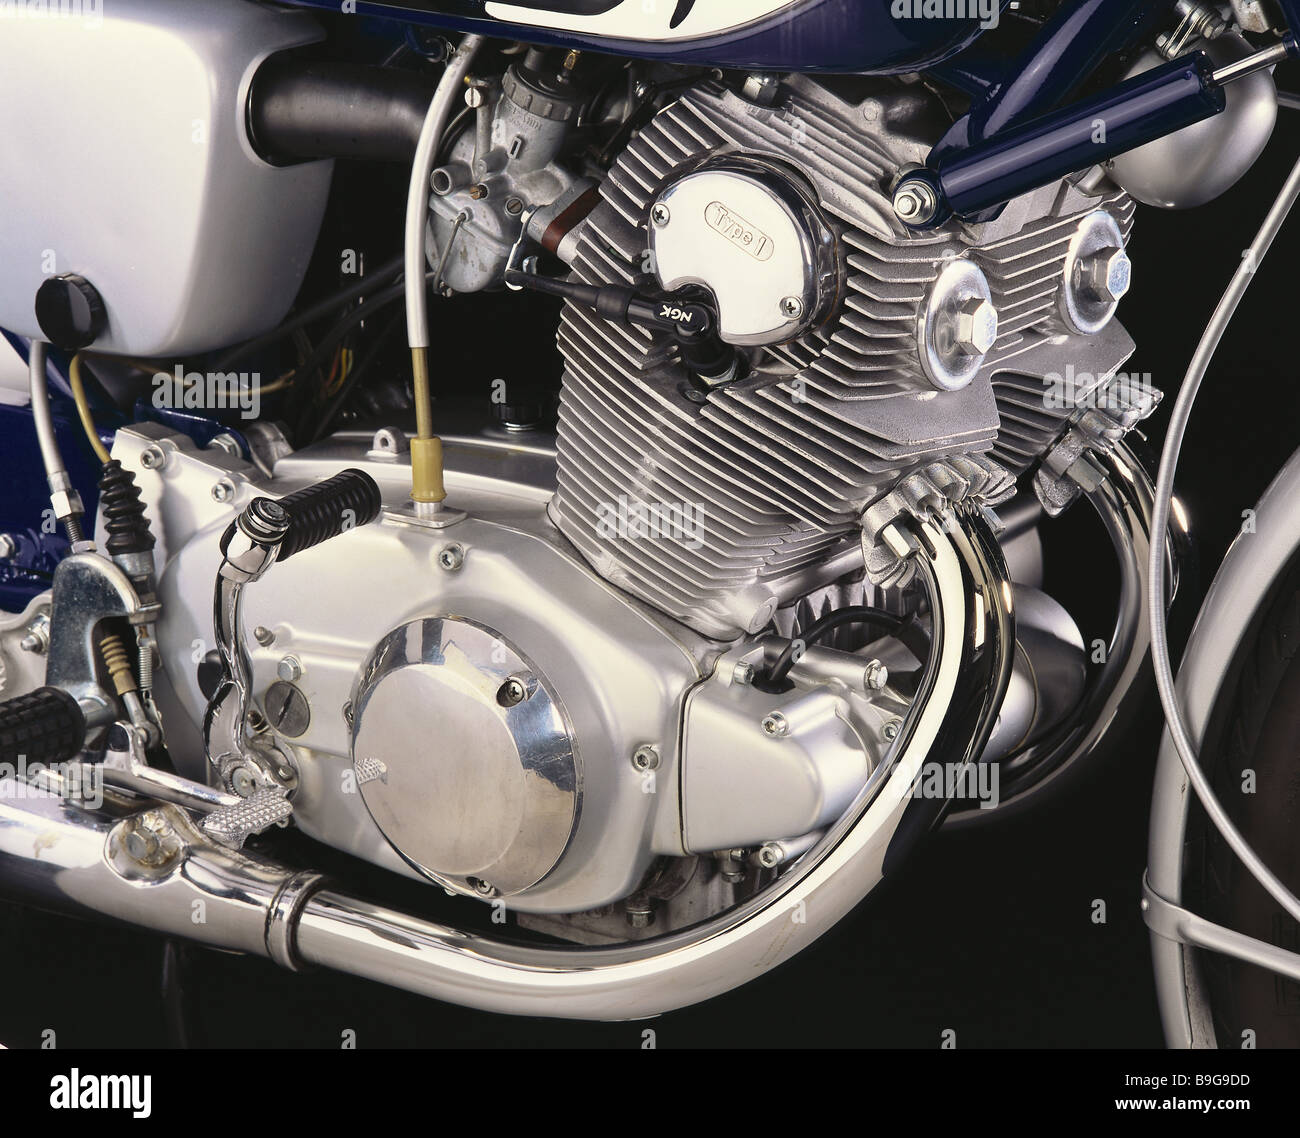 Motorrad-Honda-motor 2-Zylinder-Fahrzeug Oldtimer zwei-Zylinder-Motor mehr  krumm kühle-Rippen Motor-Block Motorrad Stockfotografie - Alamy